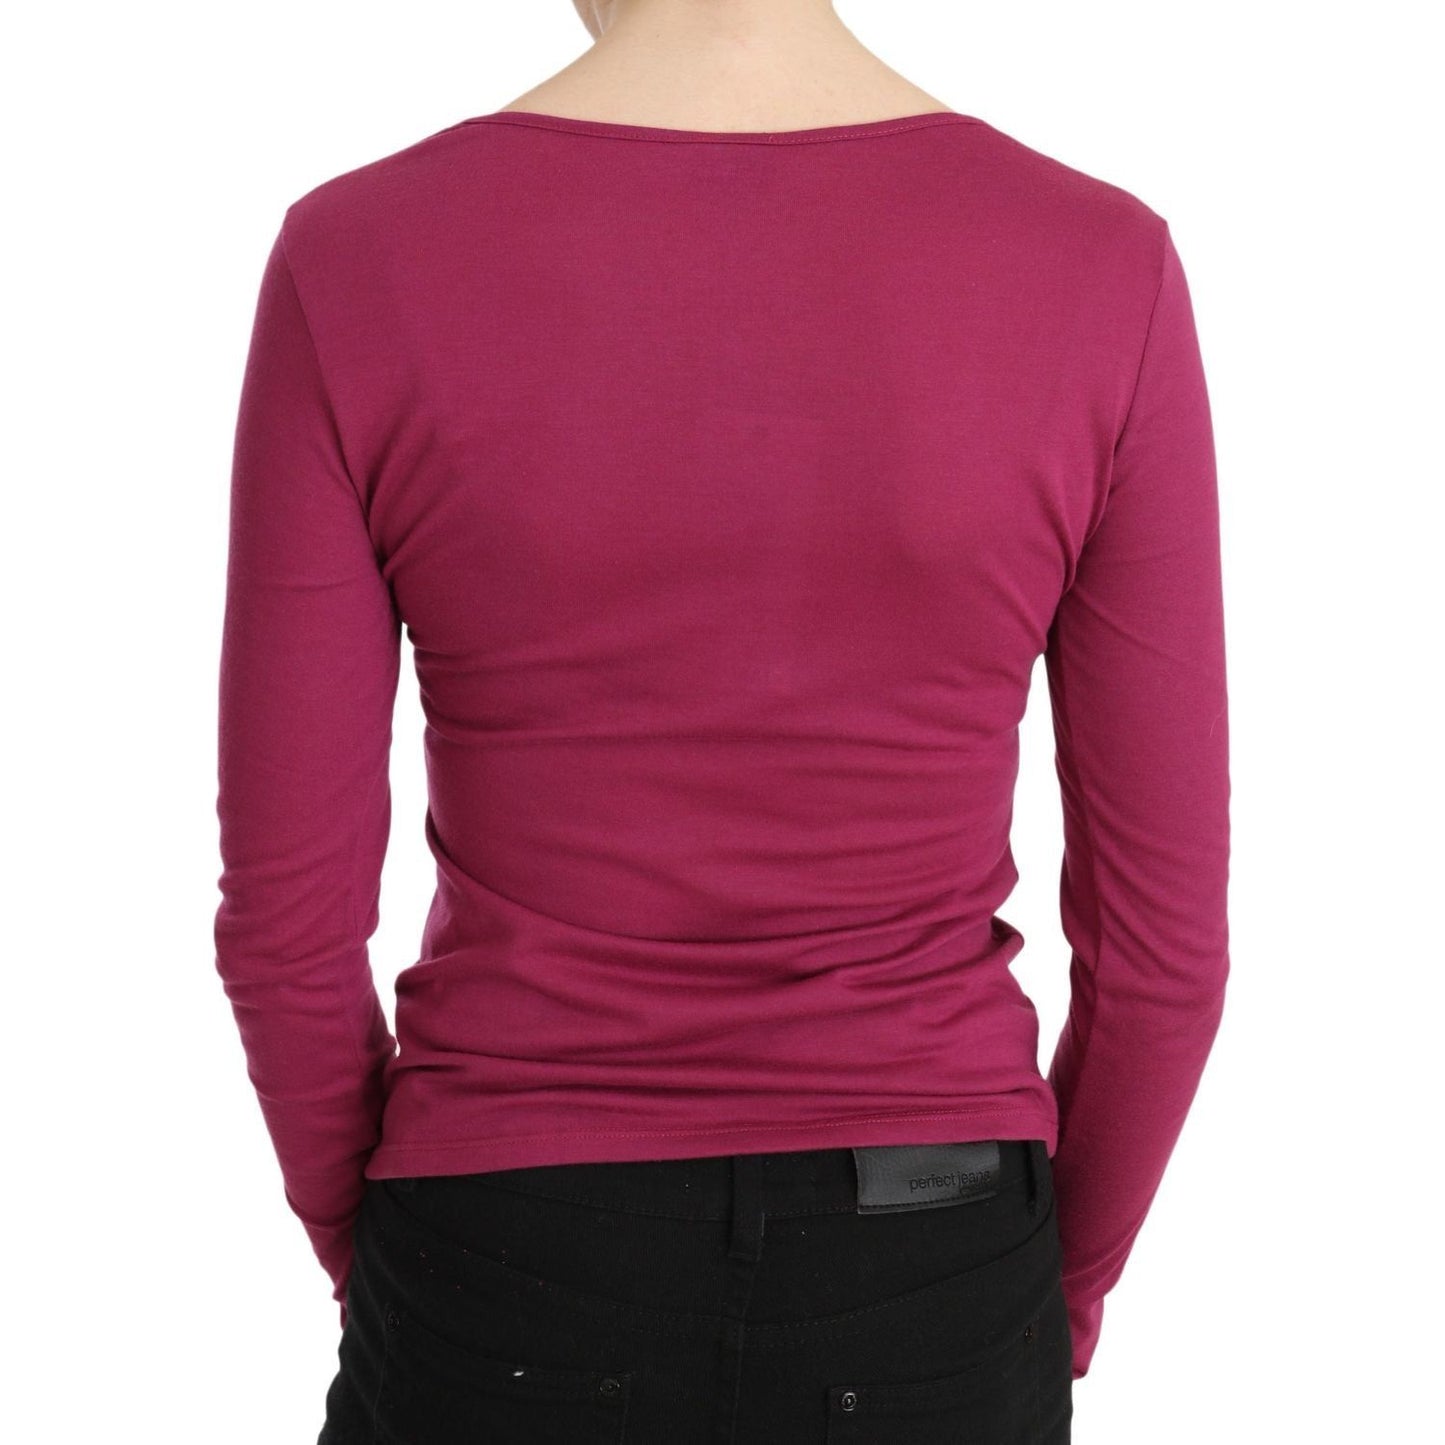 Exte Elegant Pink Crystal Embellished Long Sleeve Top pink-exte-crystal-embellished-long-sleeve-top